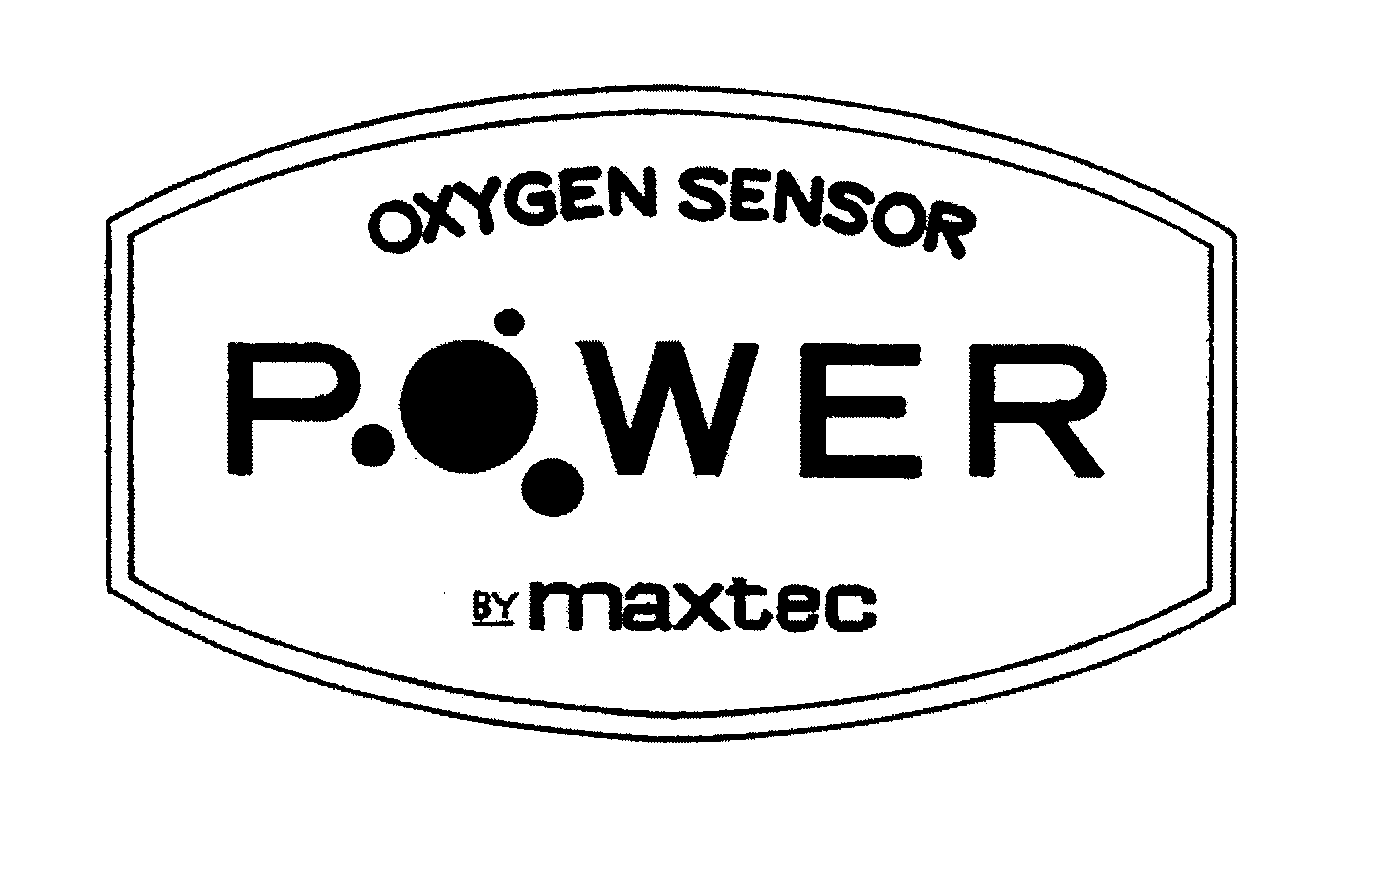  OXYGEN SENSOR POWER BY MAXTEC